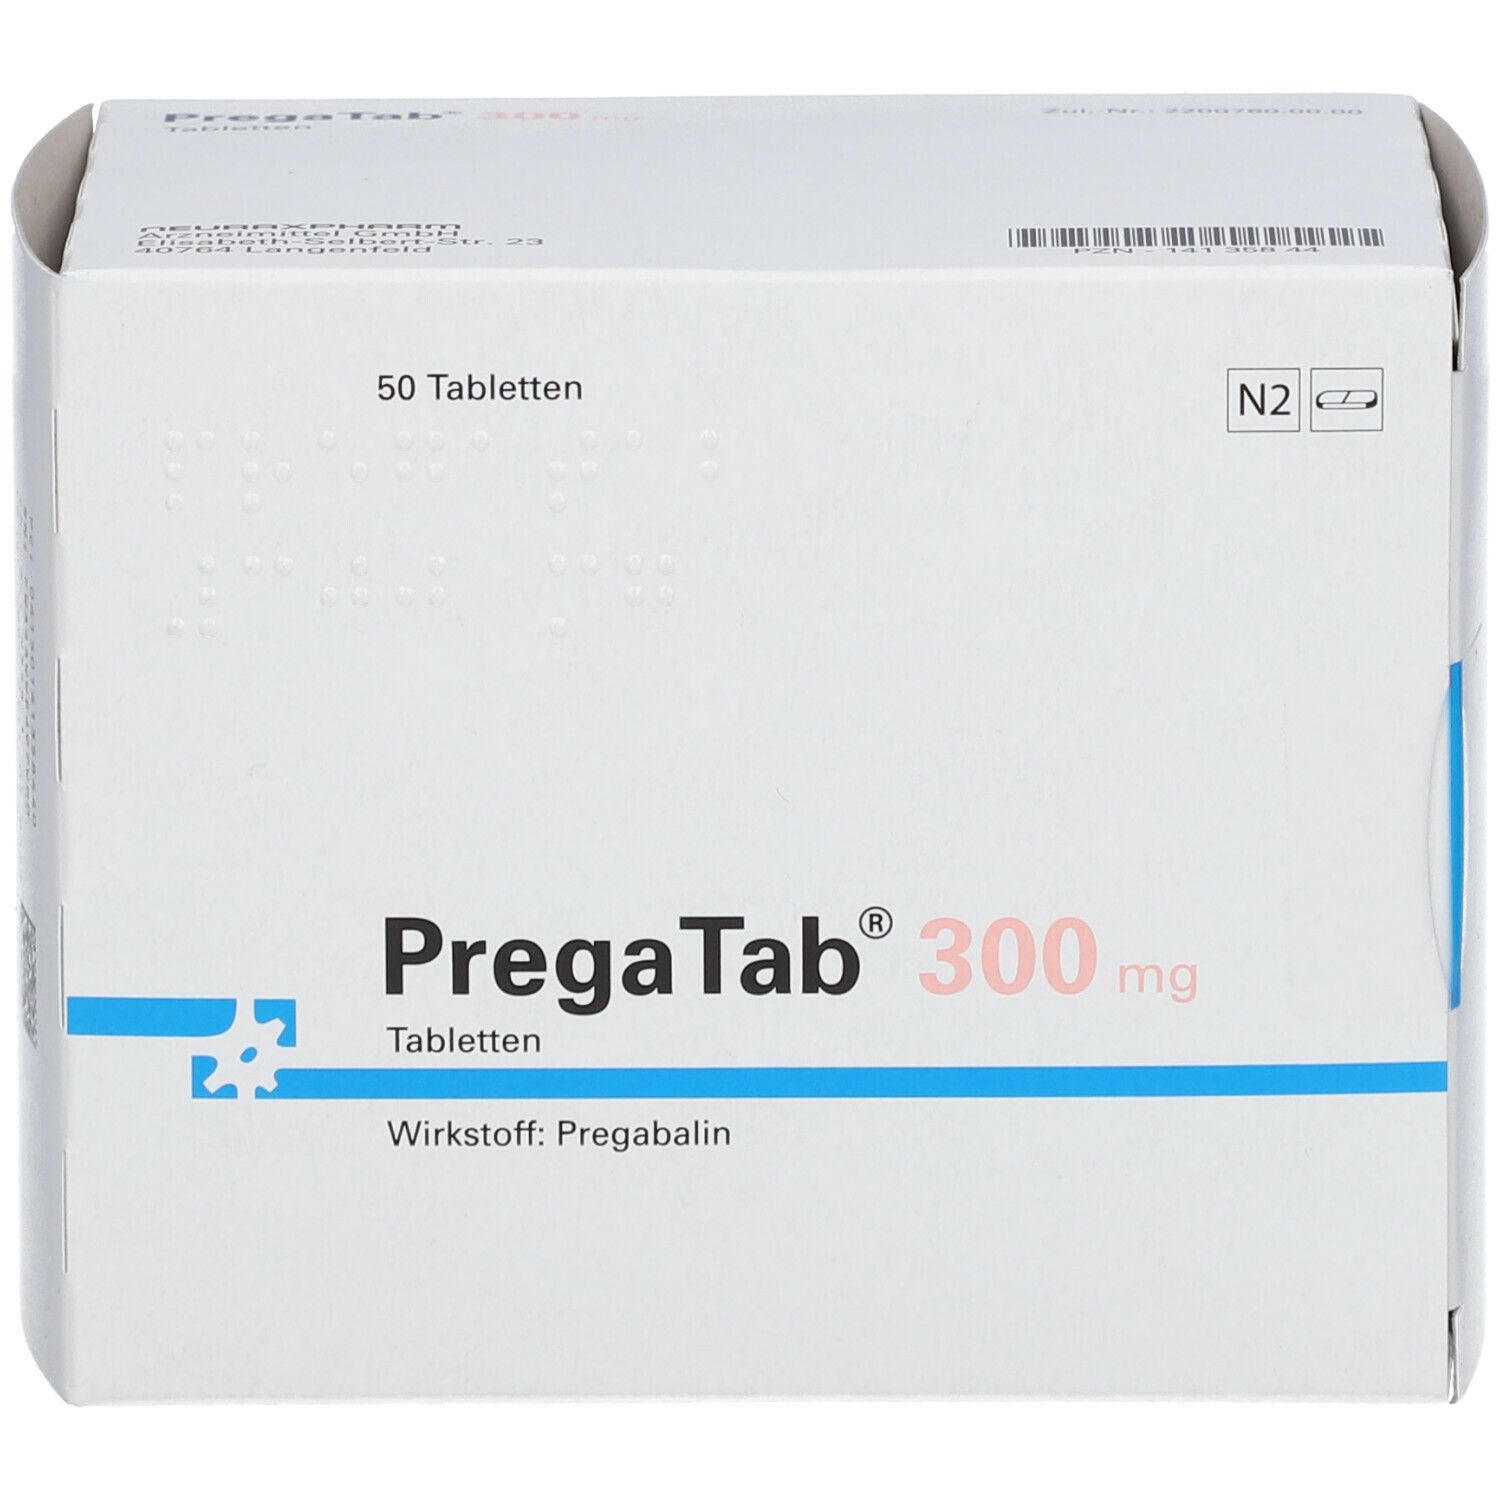 PregaTab® 300 mg